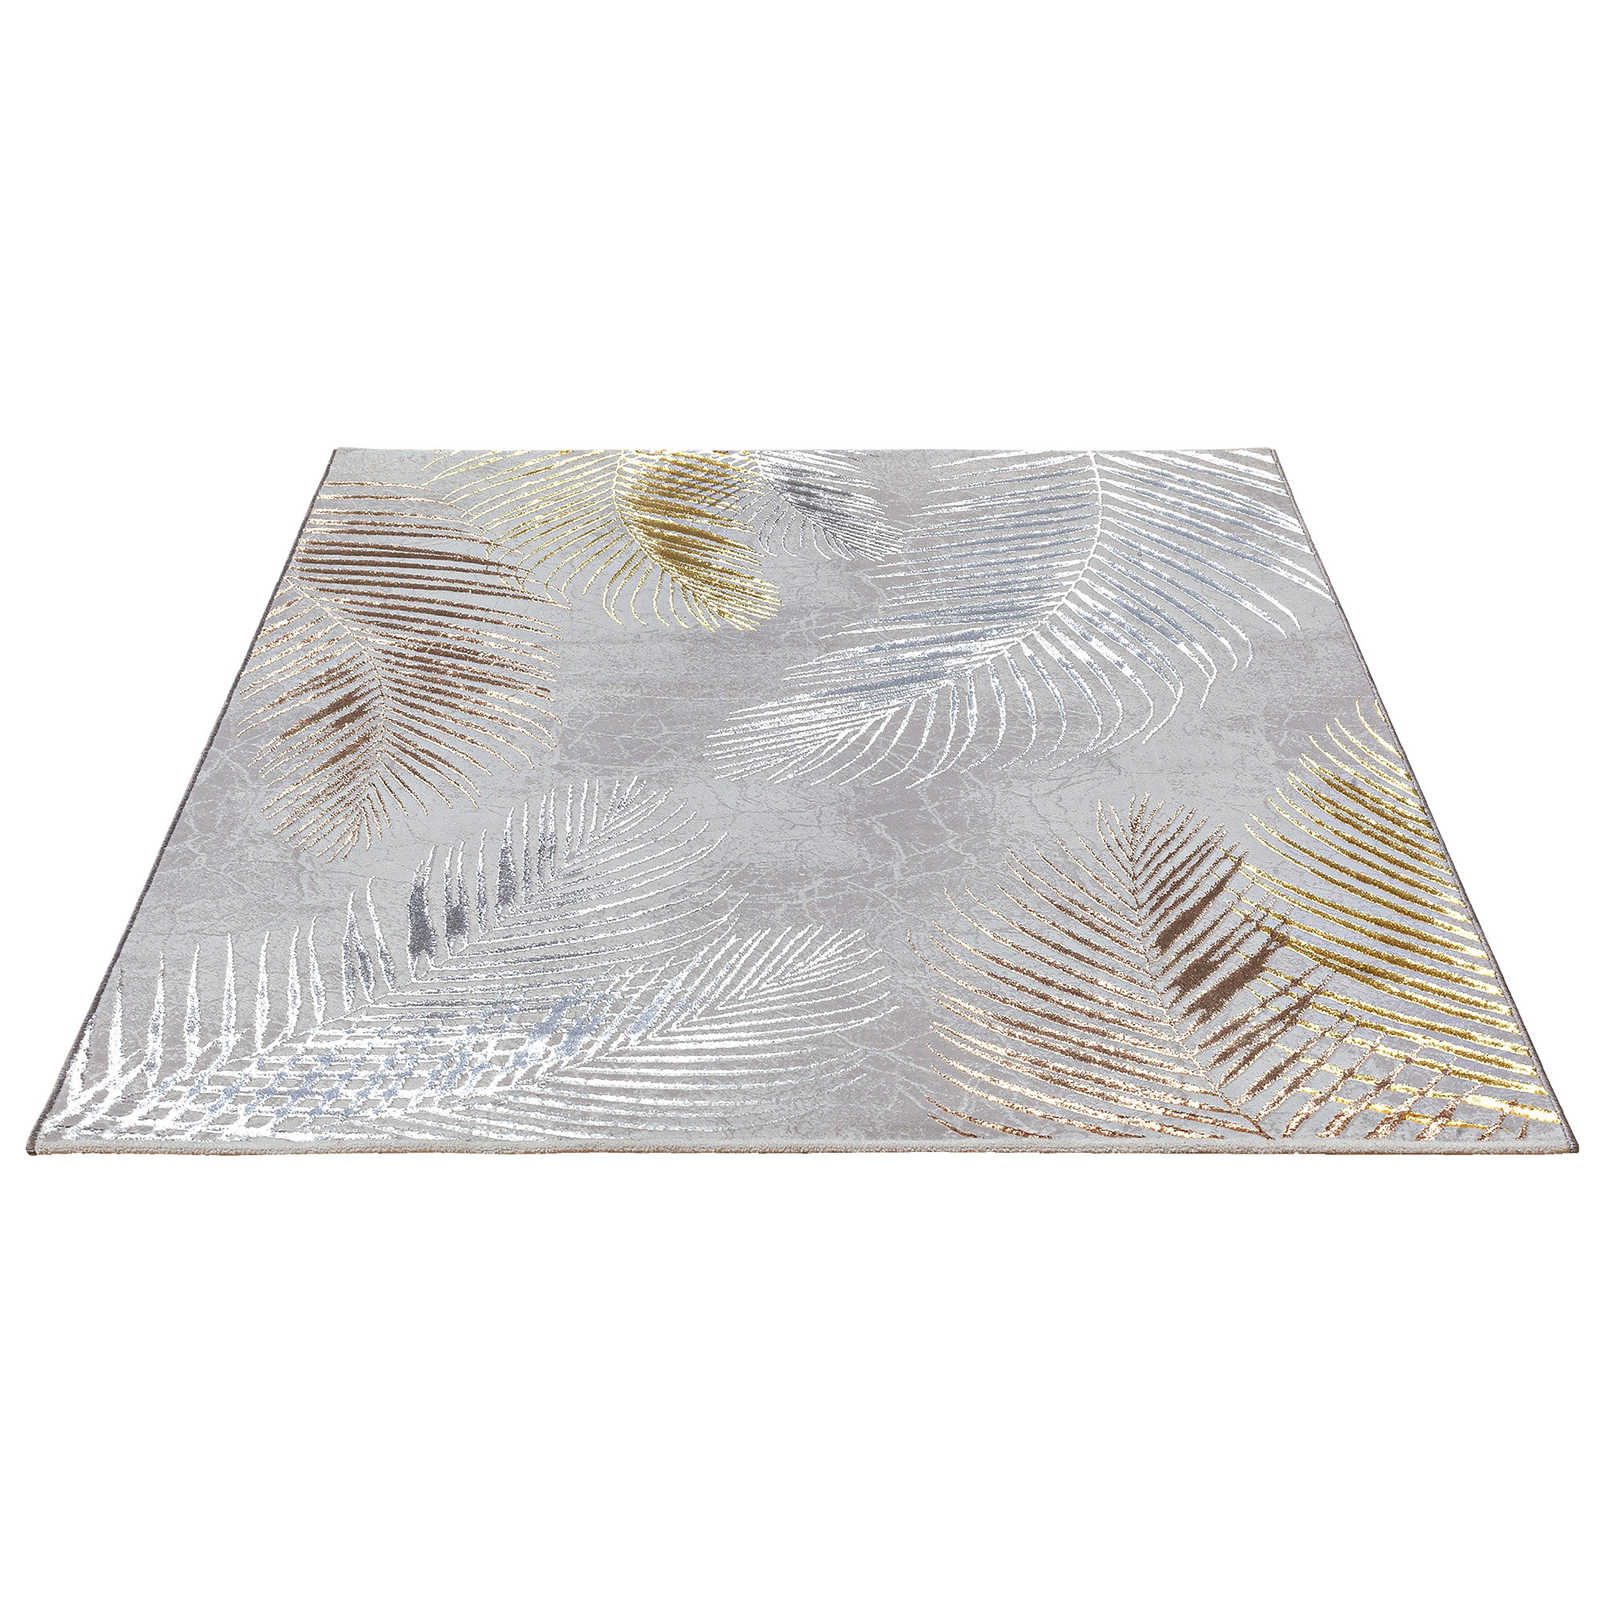 Knuffelzacht hoogpolig tapijt in grijs als loper - 340 x 240 cm
